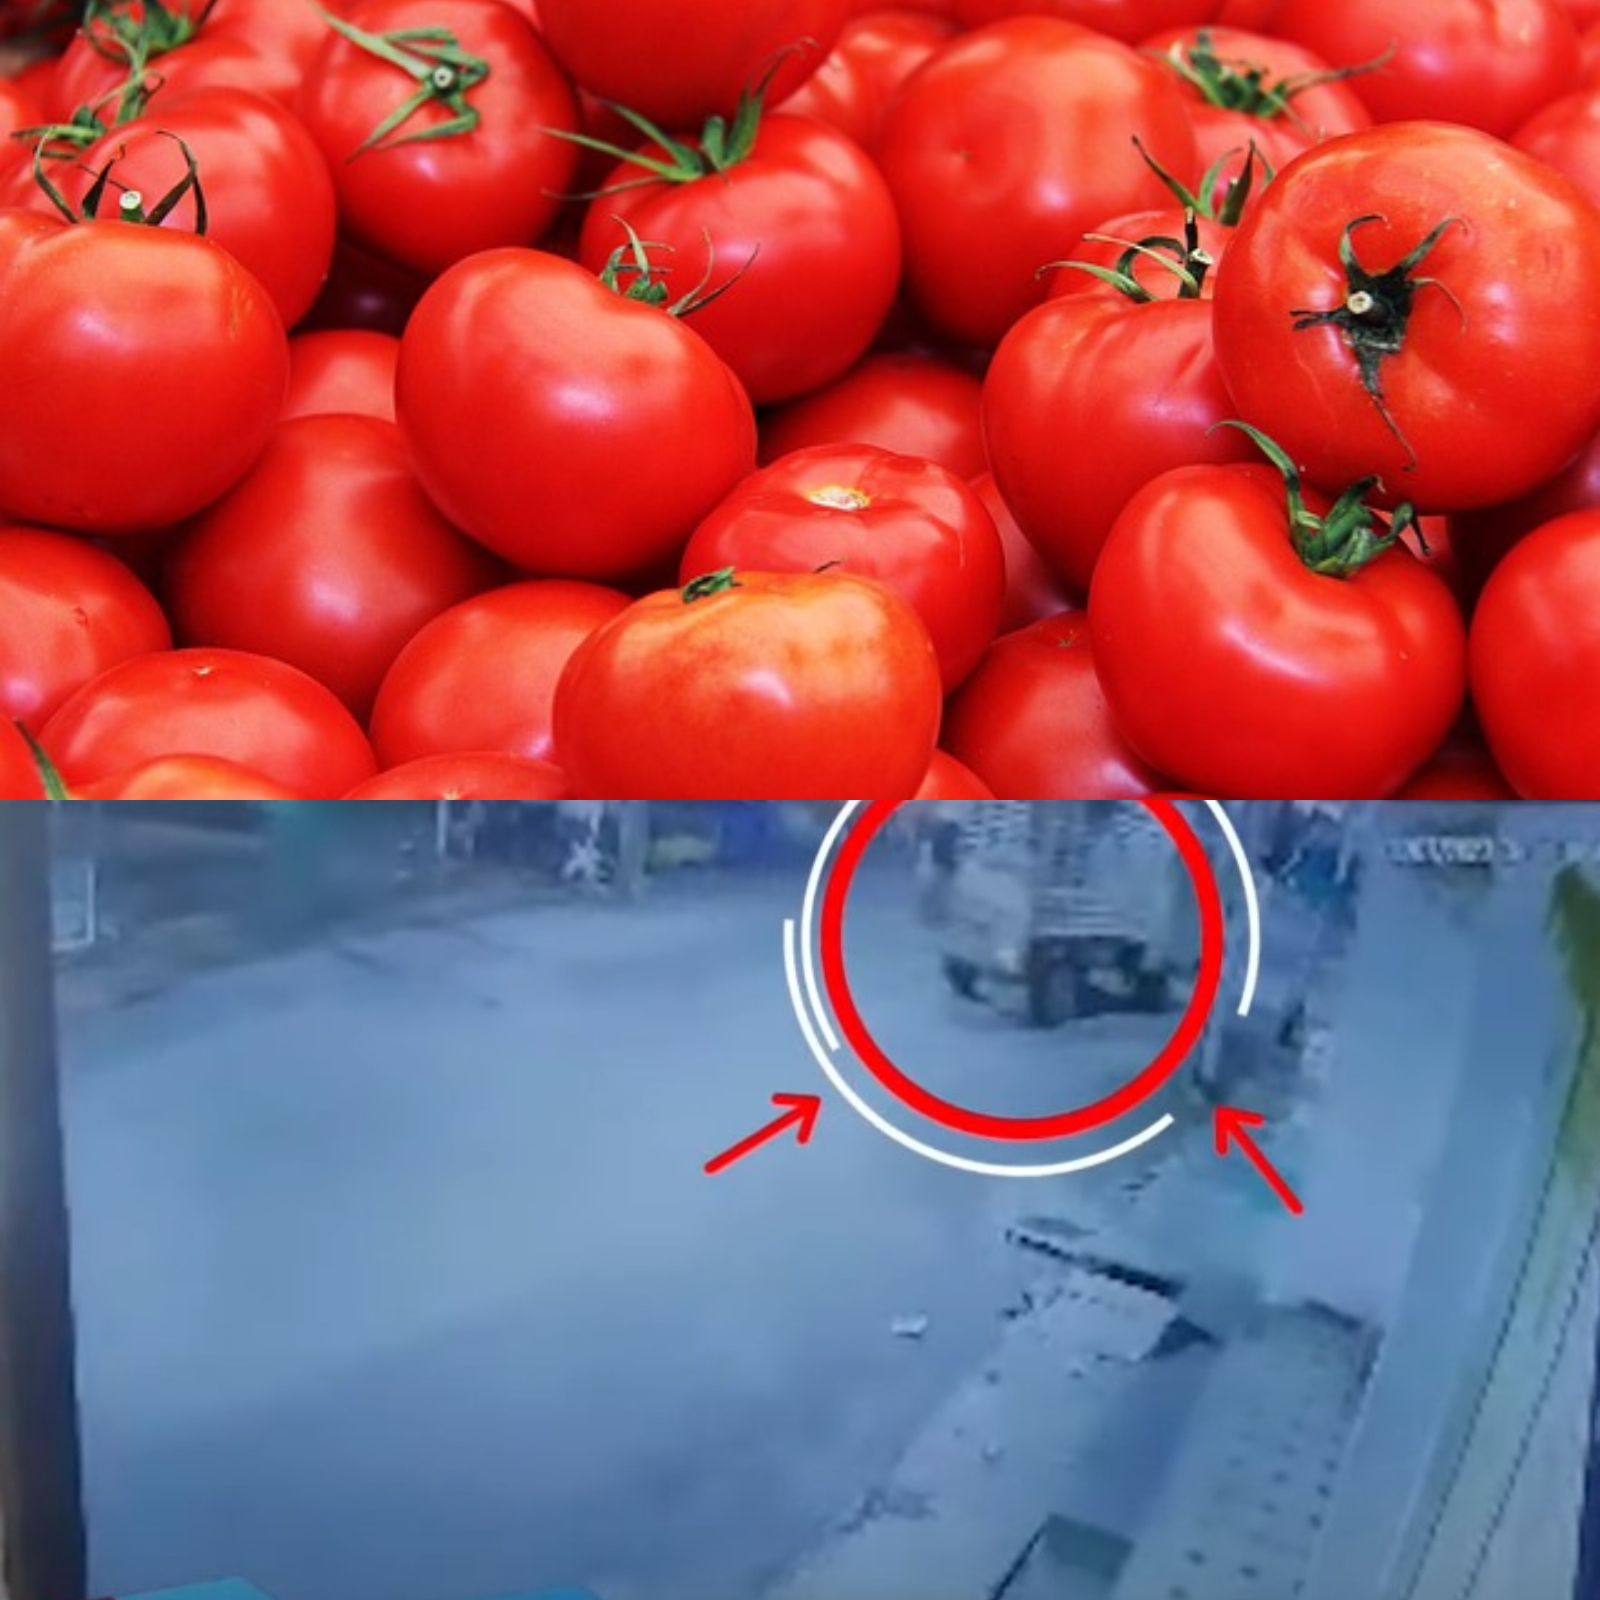 Tomatoes stolen: కాదేదీ చోరీకనర్హం.. టమాటాలపై పడ్డ దొంగల కళ్లు.. ఏకంగా 2.5లక్షల విలువ చేసే ఎర్రపండు చోరీ!